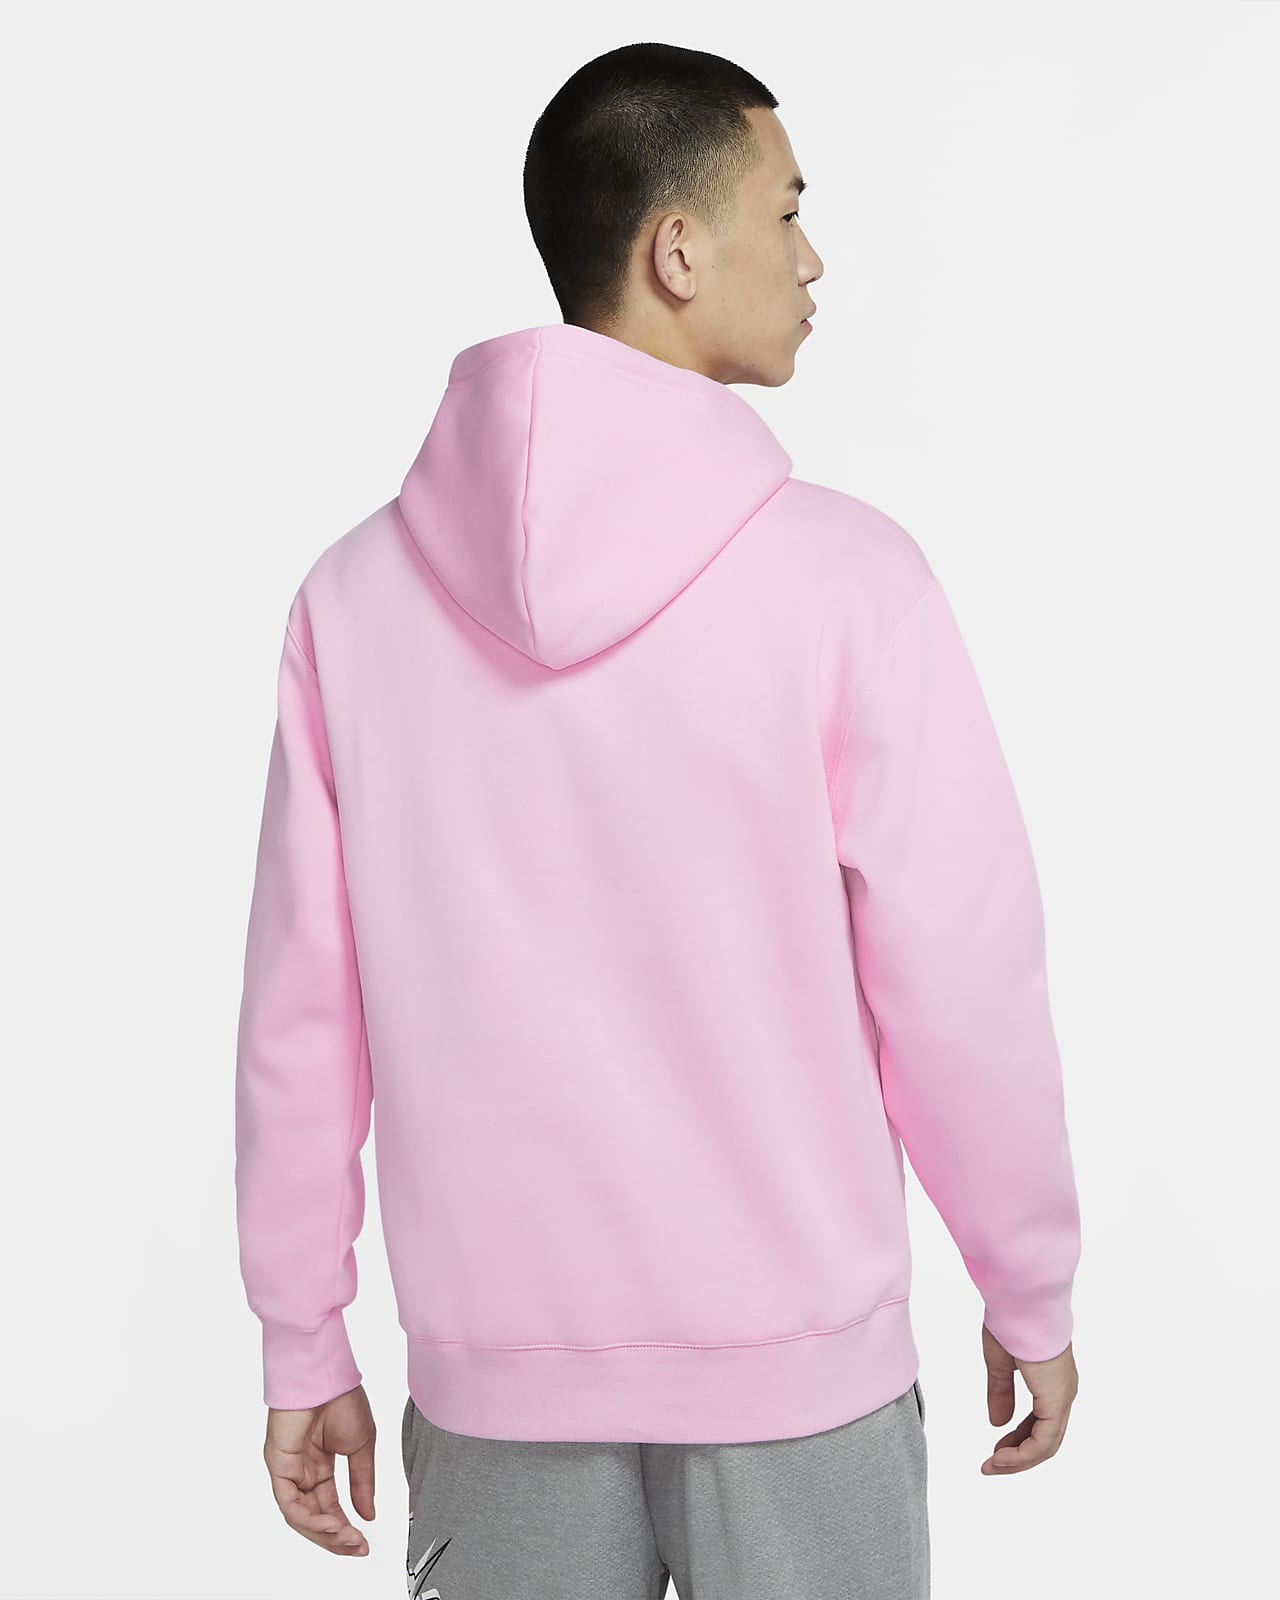 nike pink hoodie and sweatpants